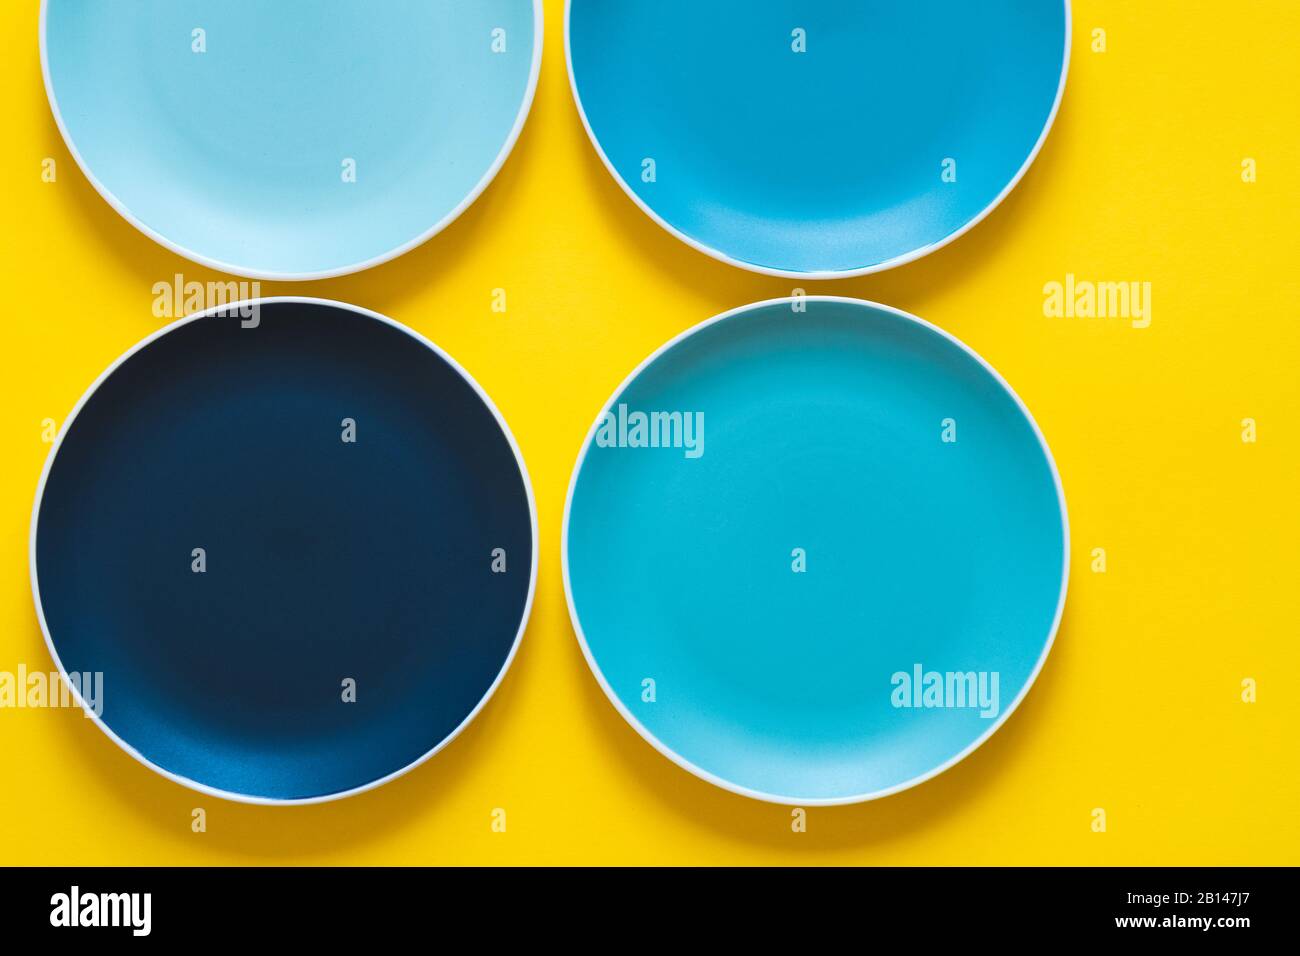 Plaques en céramique bleu pastel colorées isolées sur fond jaune. Banque D'Images